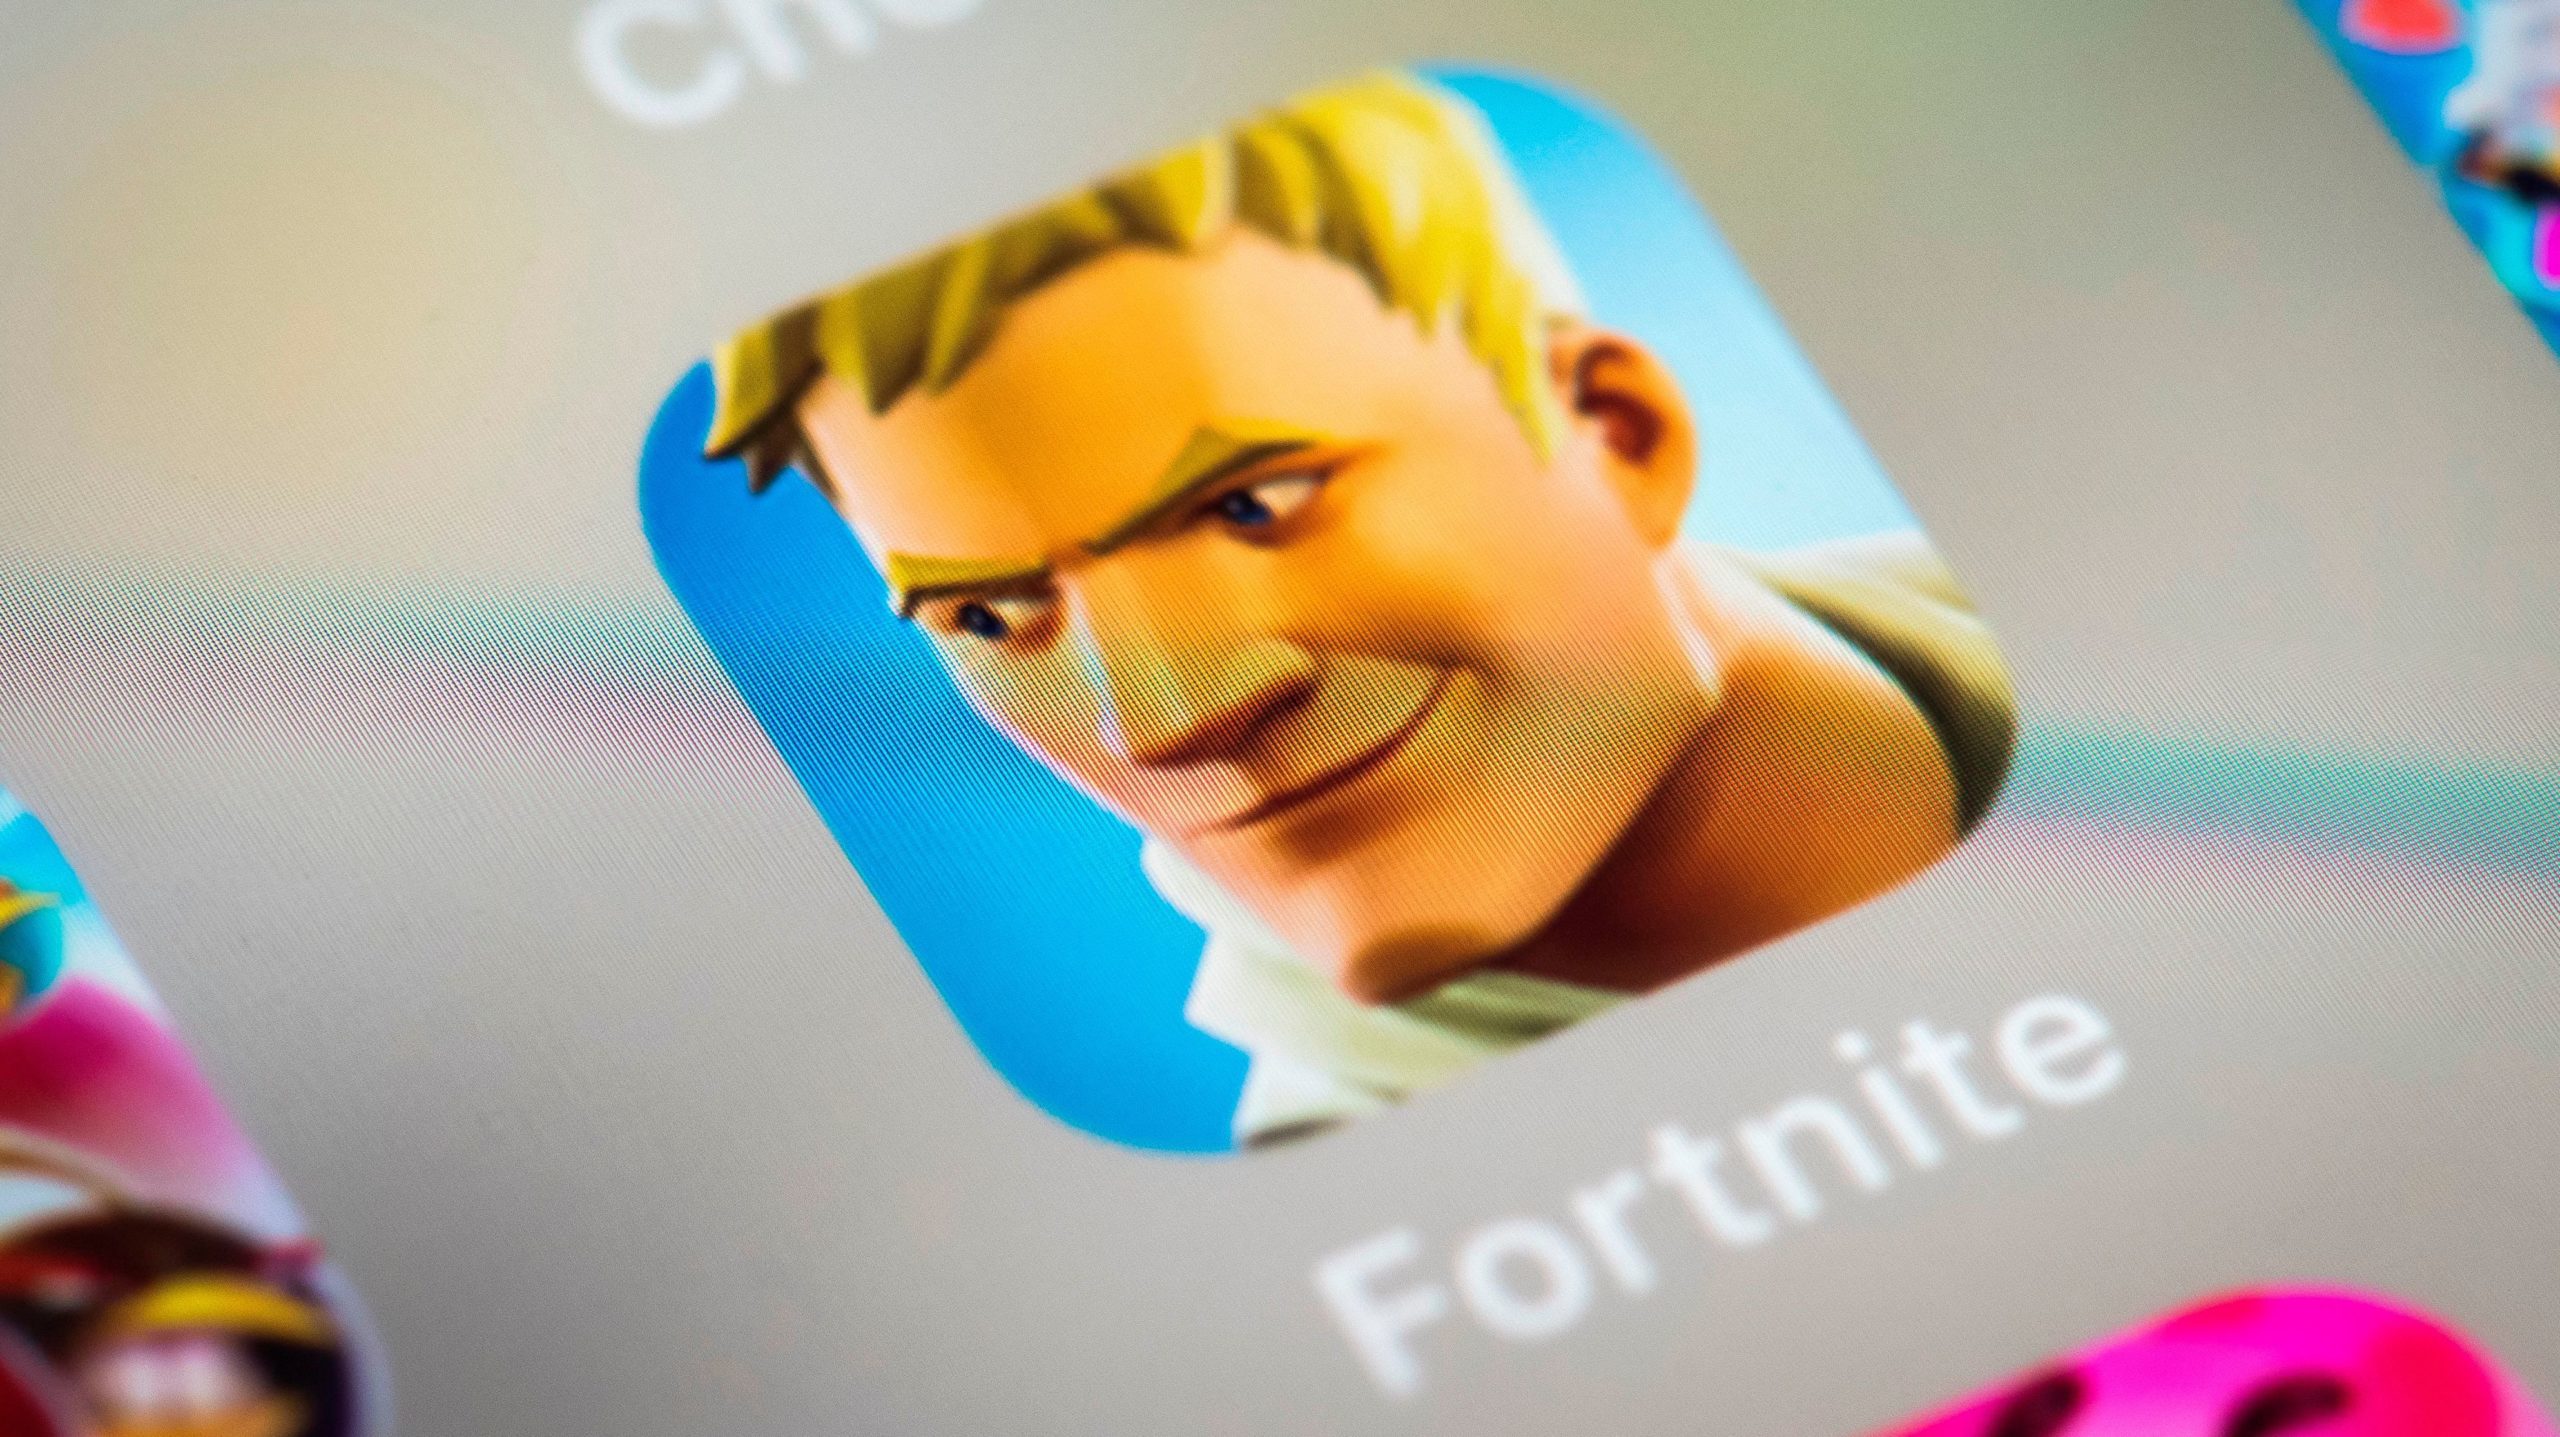 Jogos parecidos com Fortnite para celular Android e iPhone (iOS)